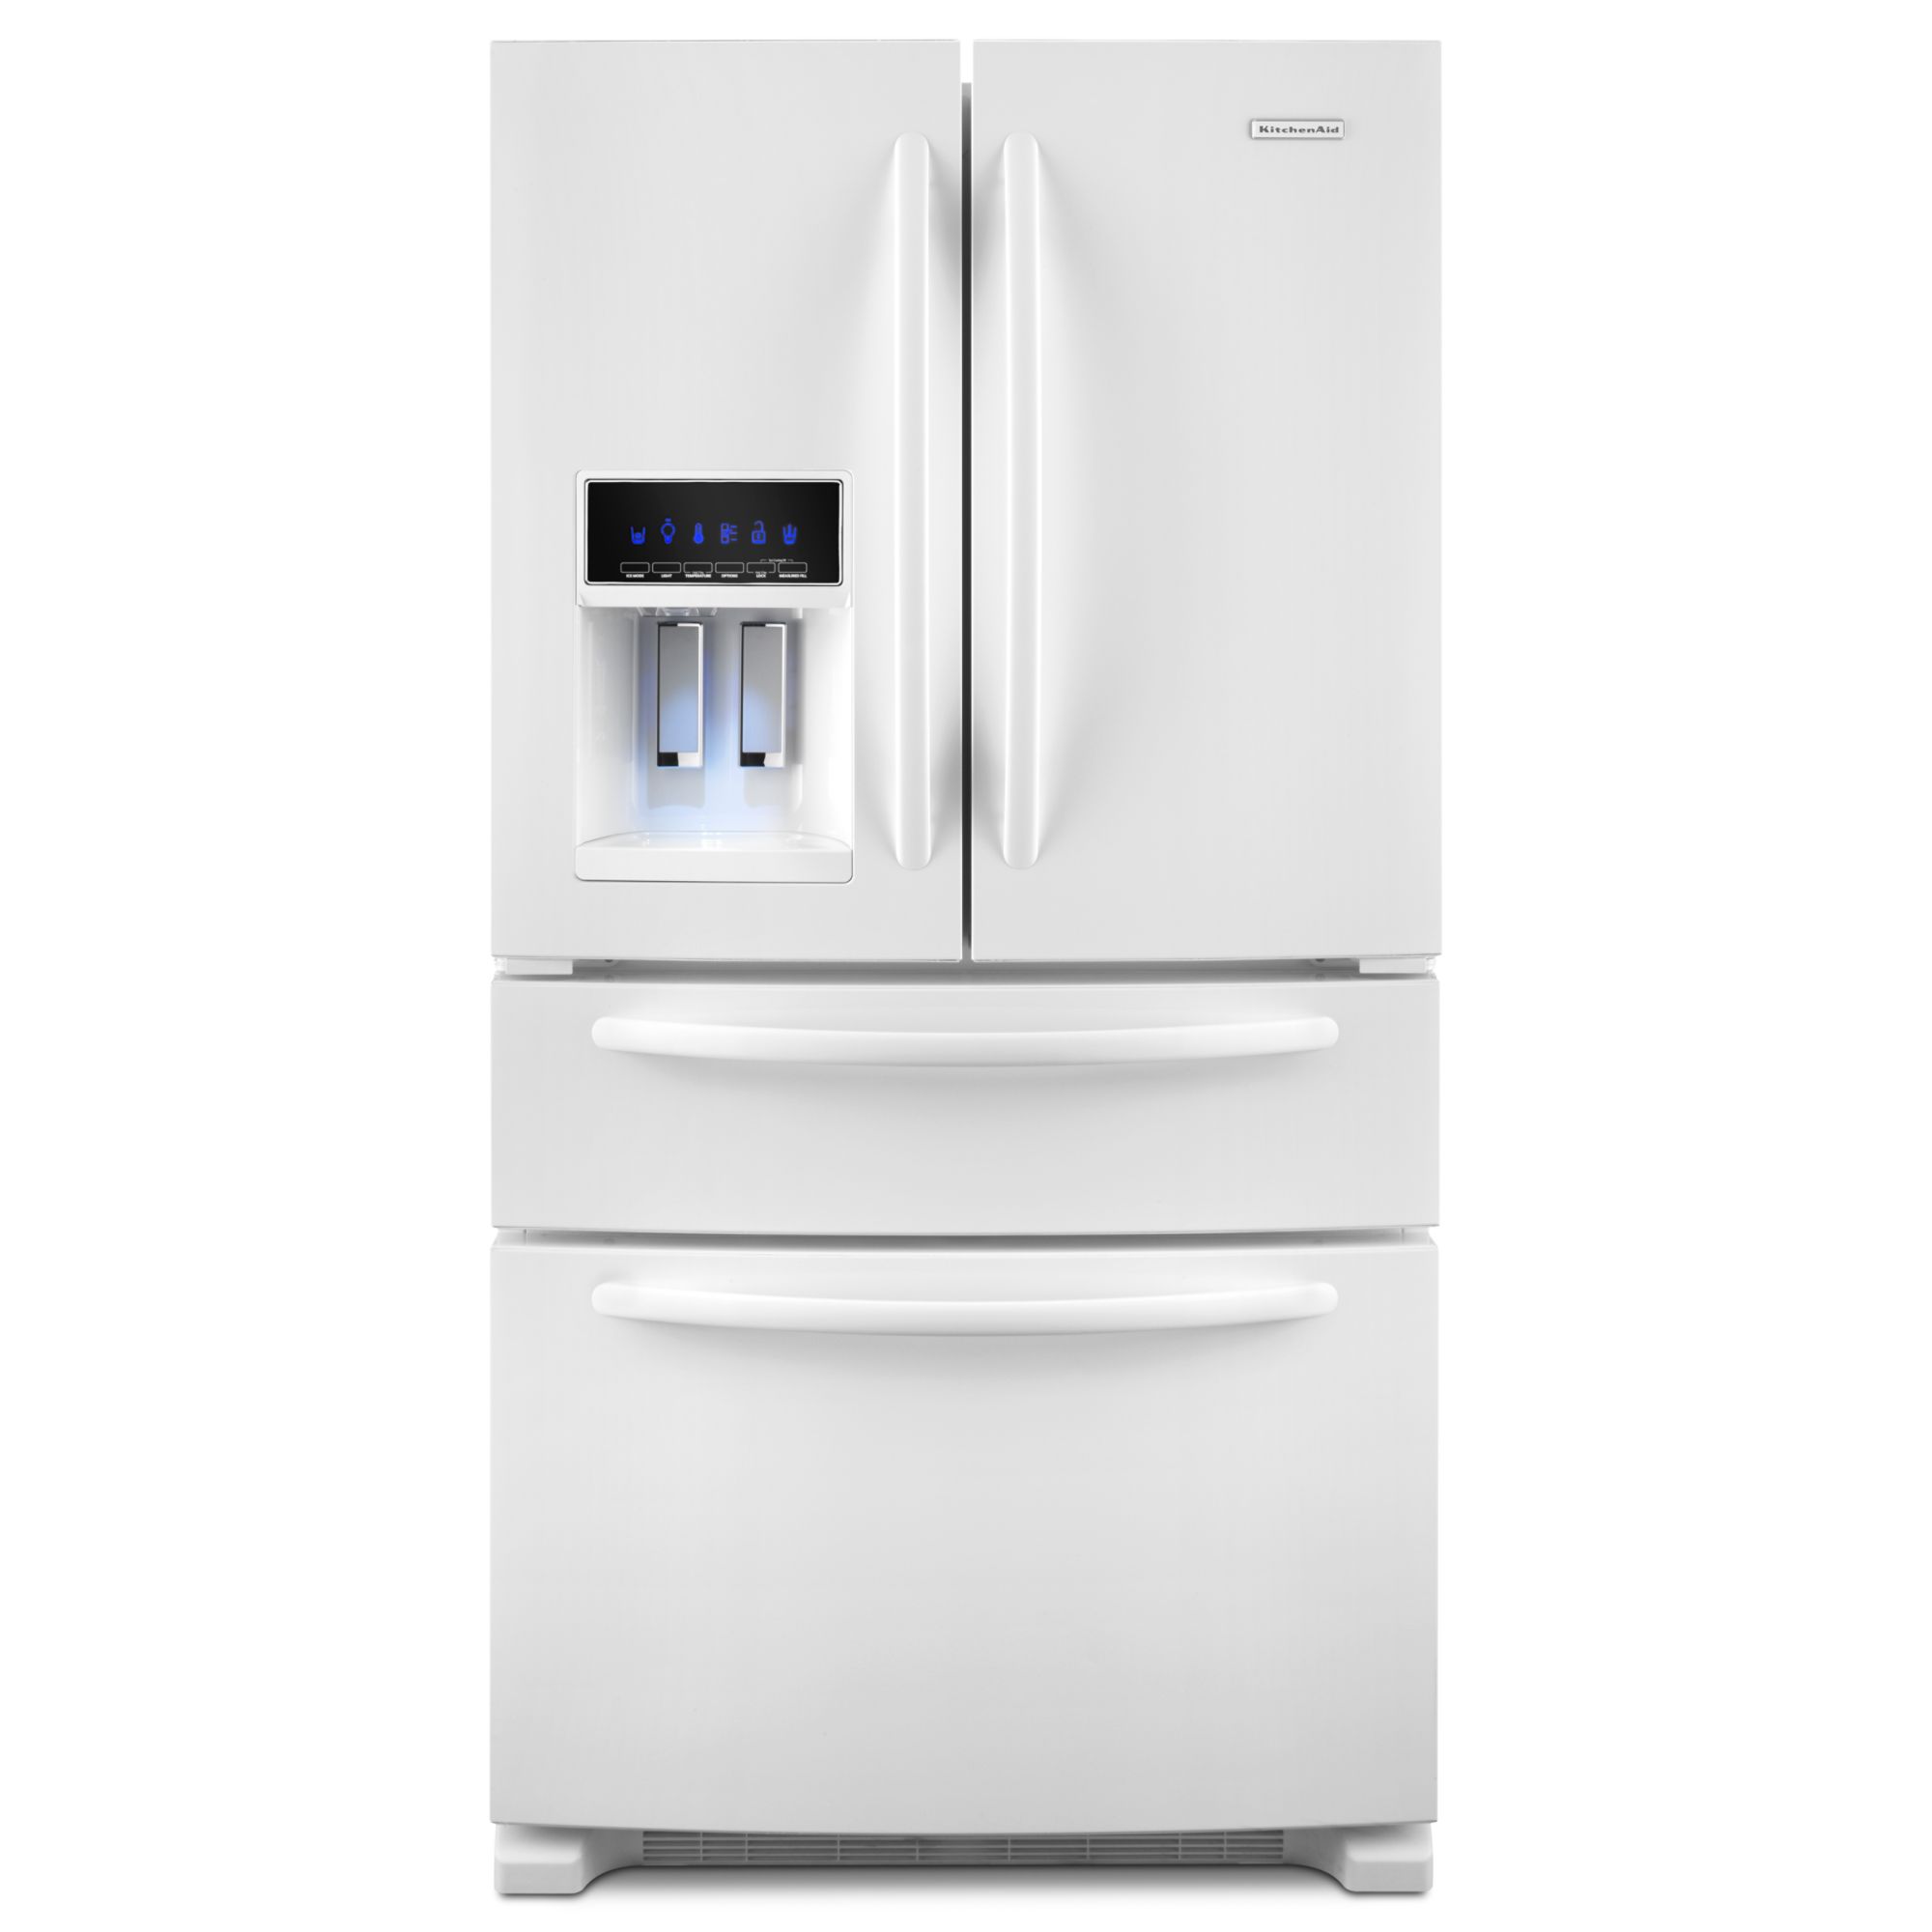 KitchenAid 25.0 cu. ft. French-Door Refrigerator w/ FreshVue Drawer - White